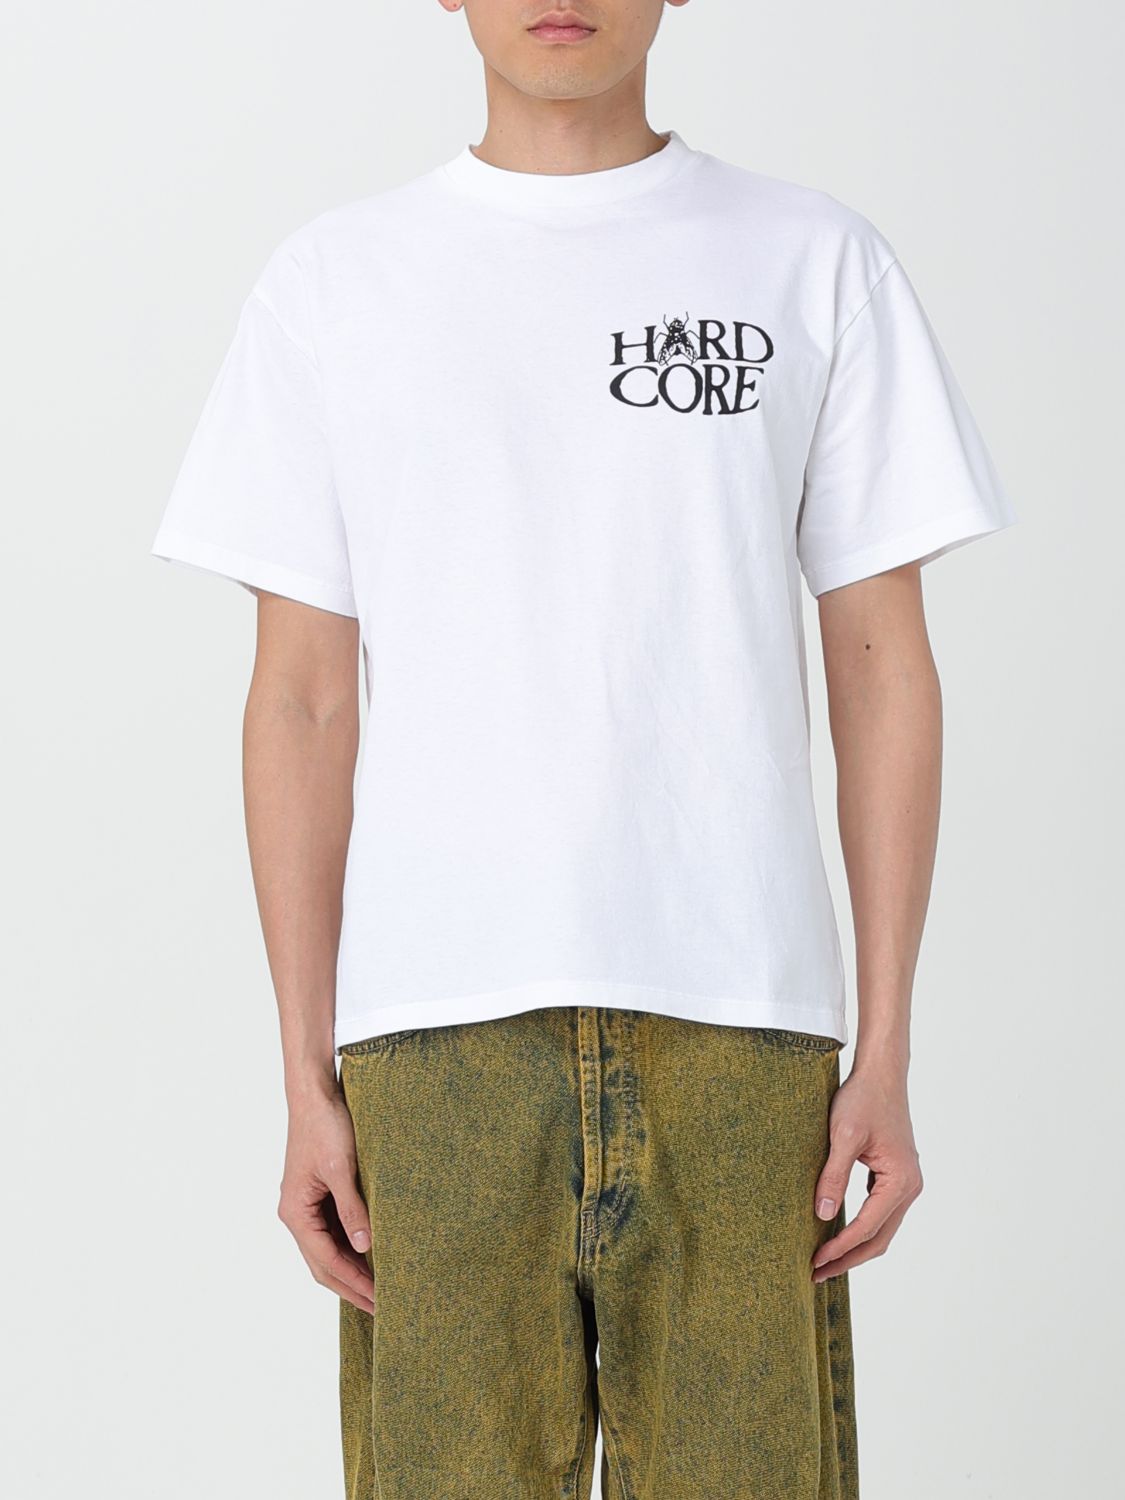 Aries T-Shirt ARIES Men colour White